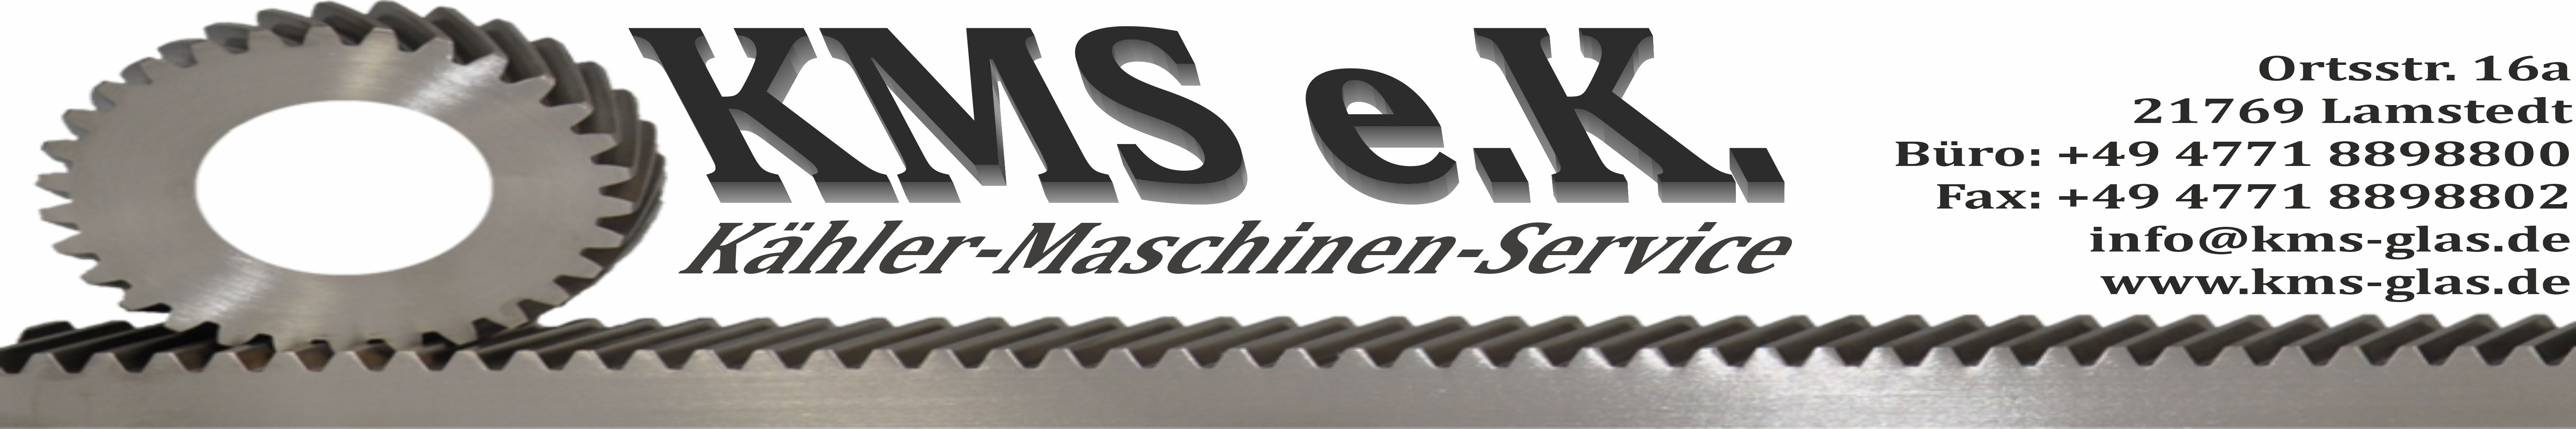 www.kms-glas.de-Logo